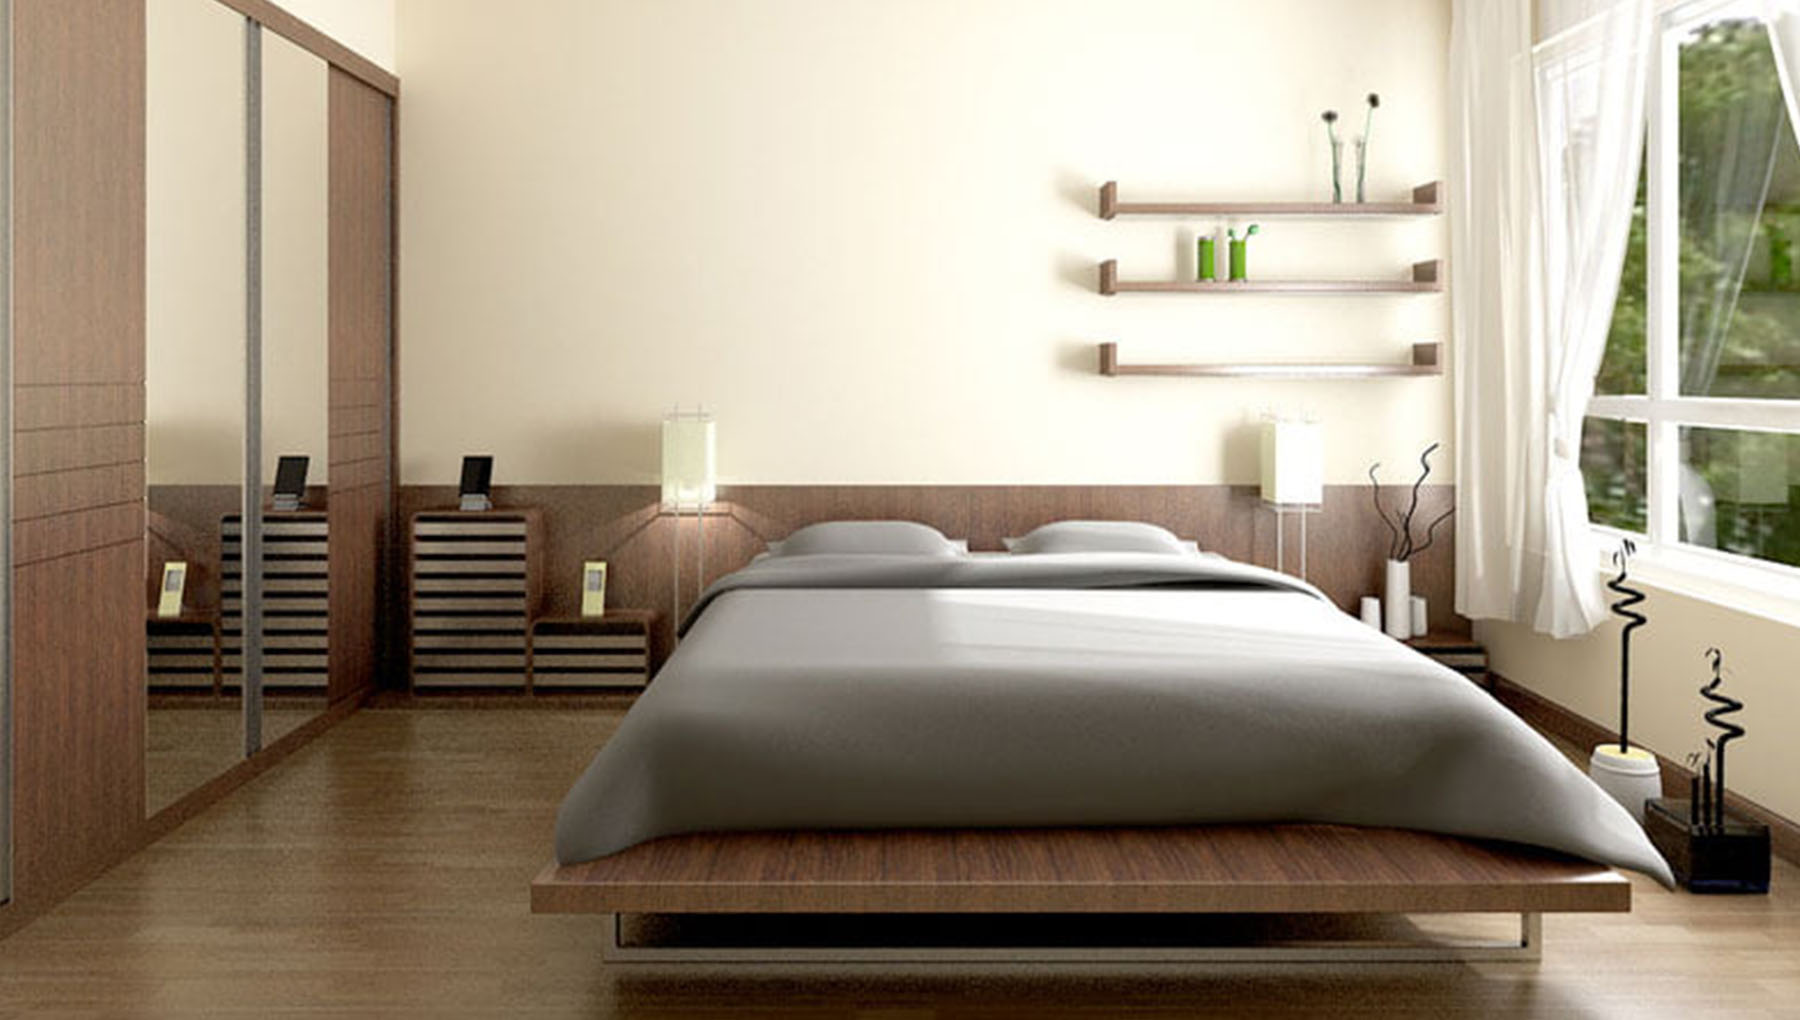 Cách đặt hướng giường ngủ chuẩn phong thủy tốt cho sức khỏe gia chủ